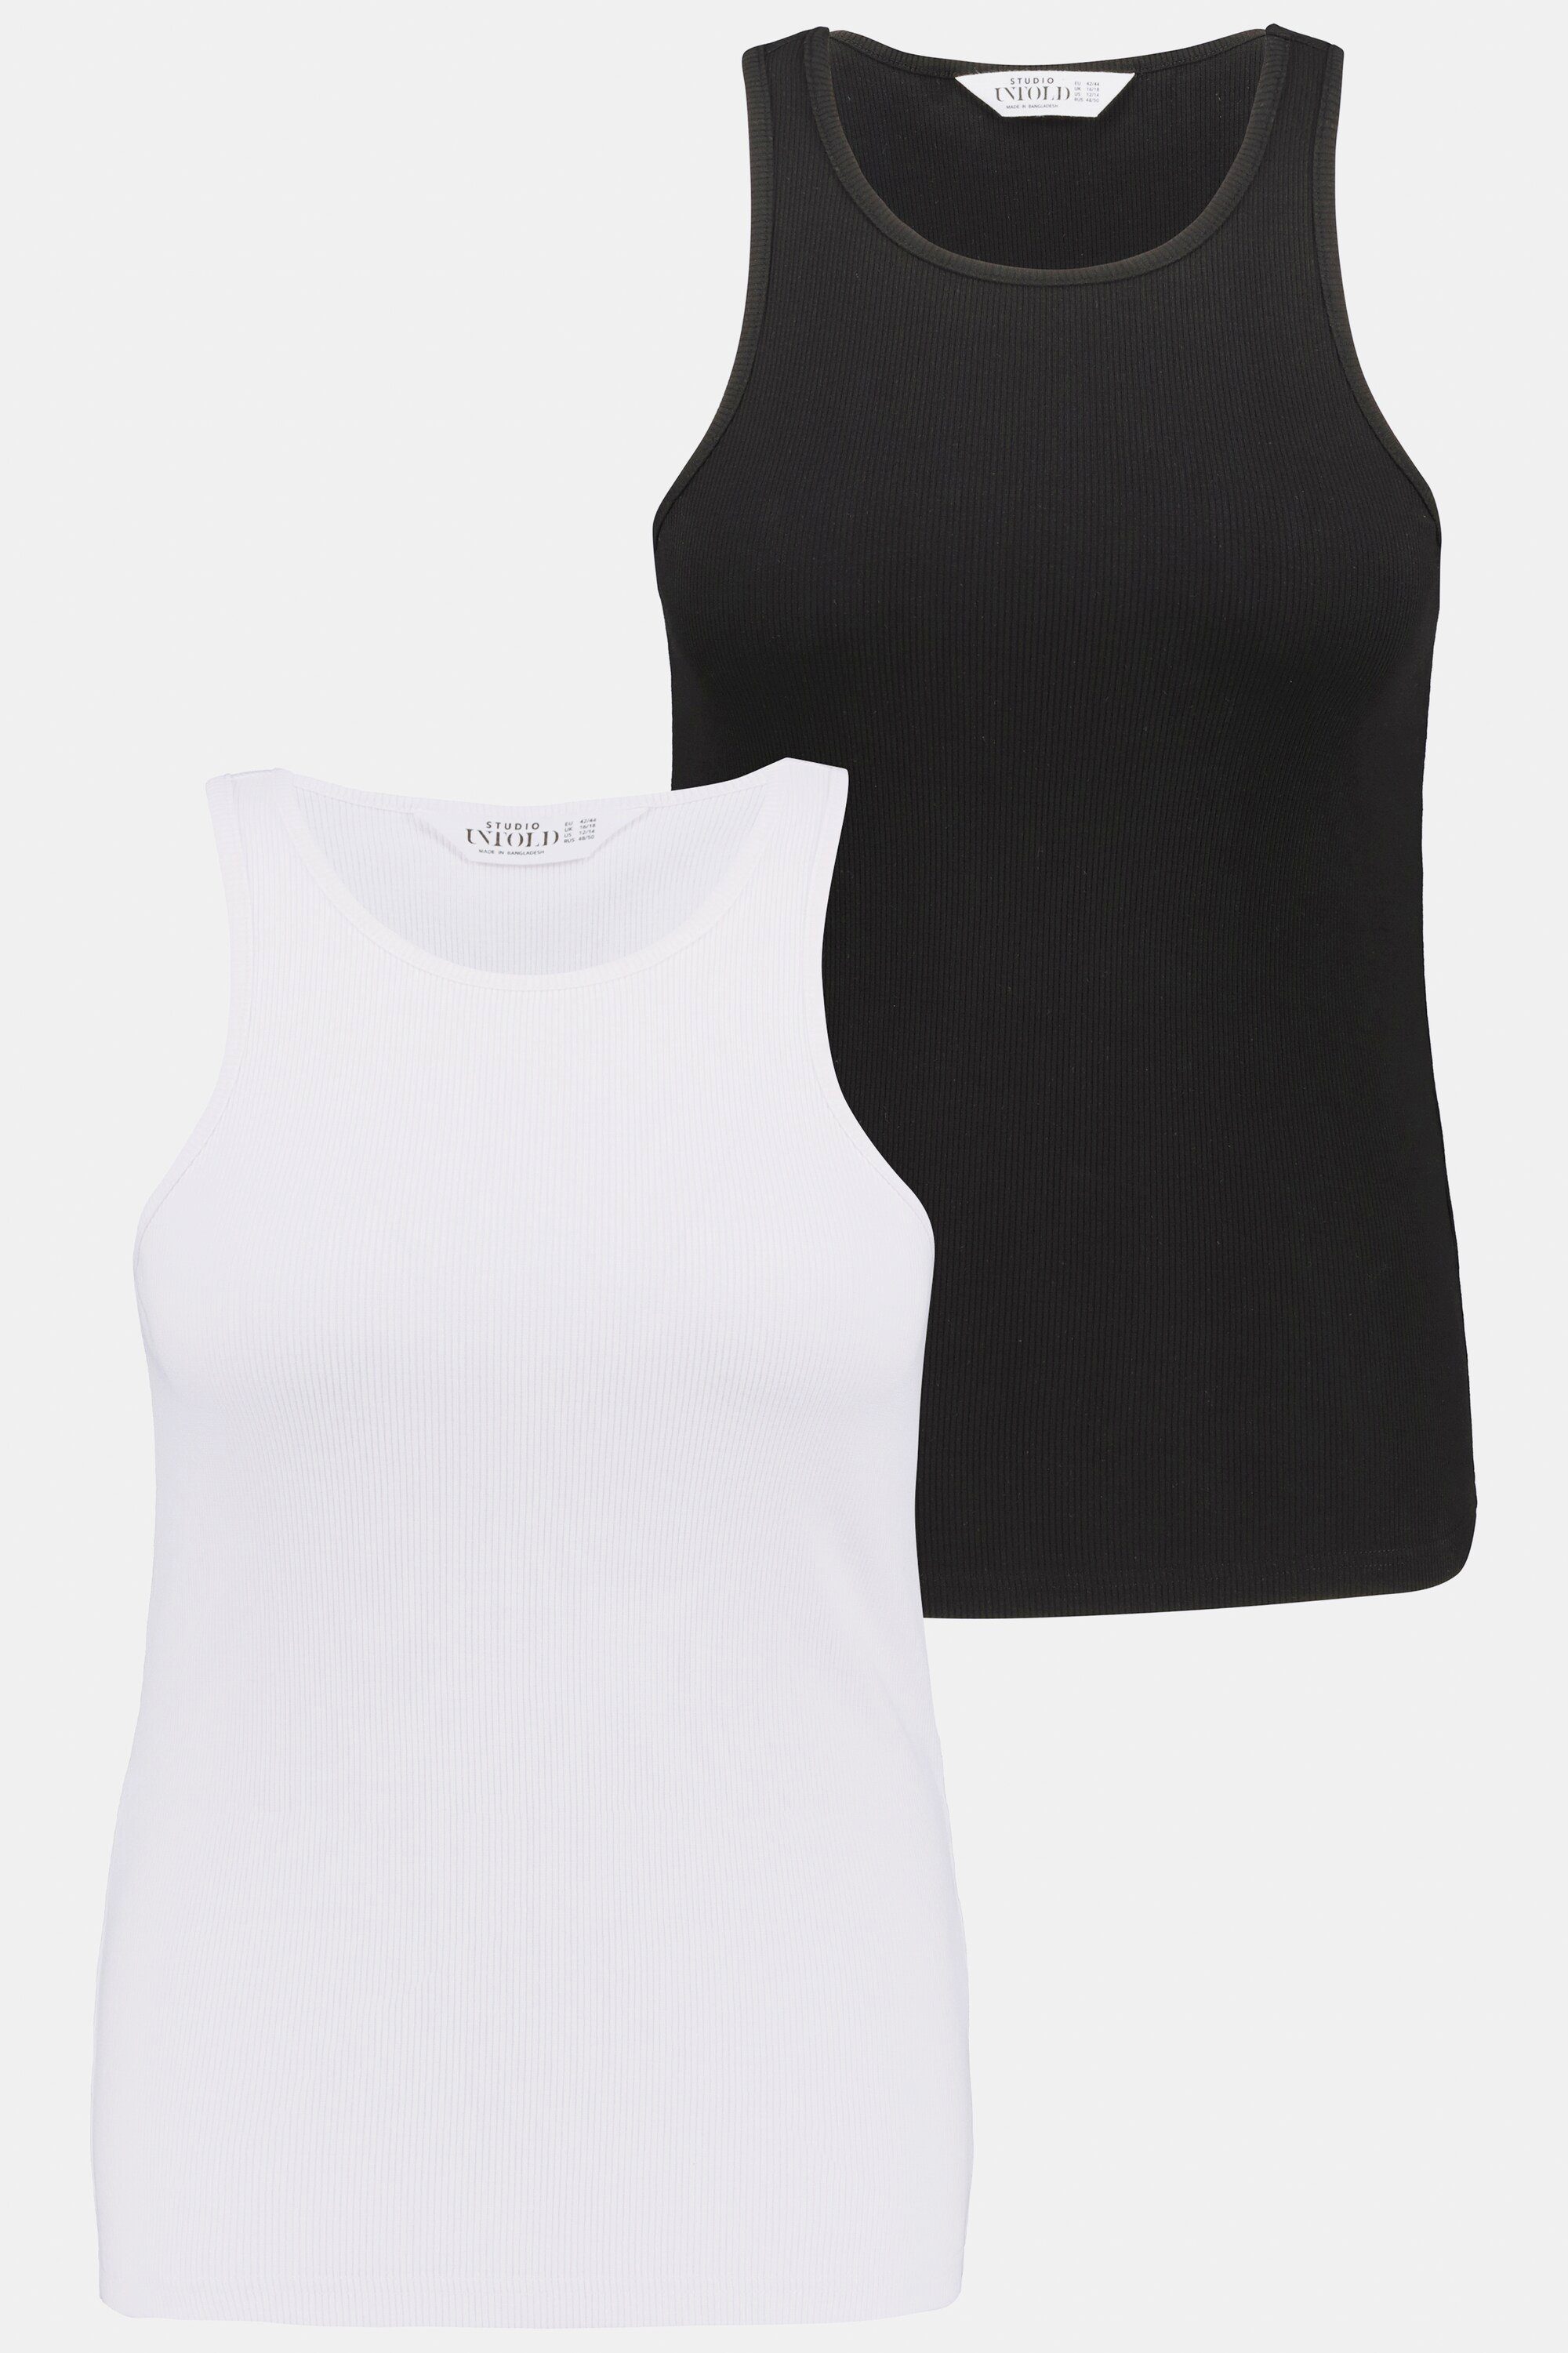 Damen Shirts Studio Untold Rundhalsshirt Basic Tank Top Slim Fit Rundhals gerippt